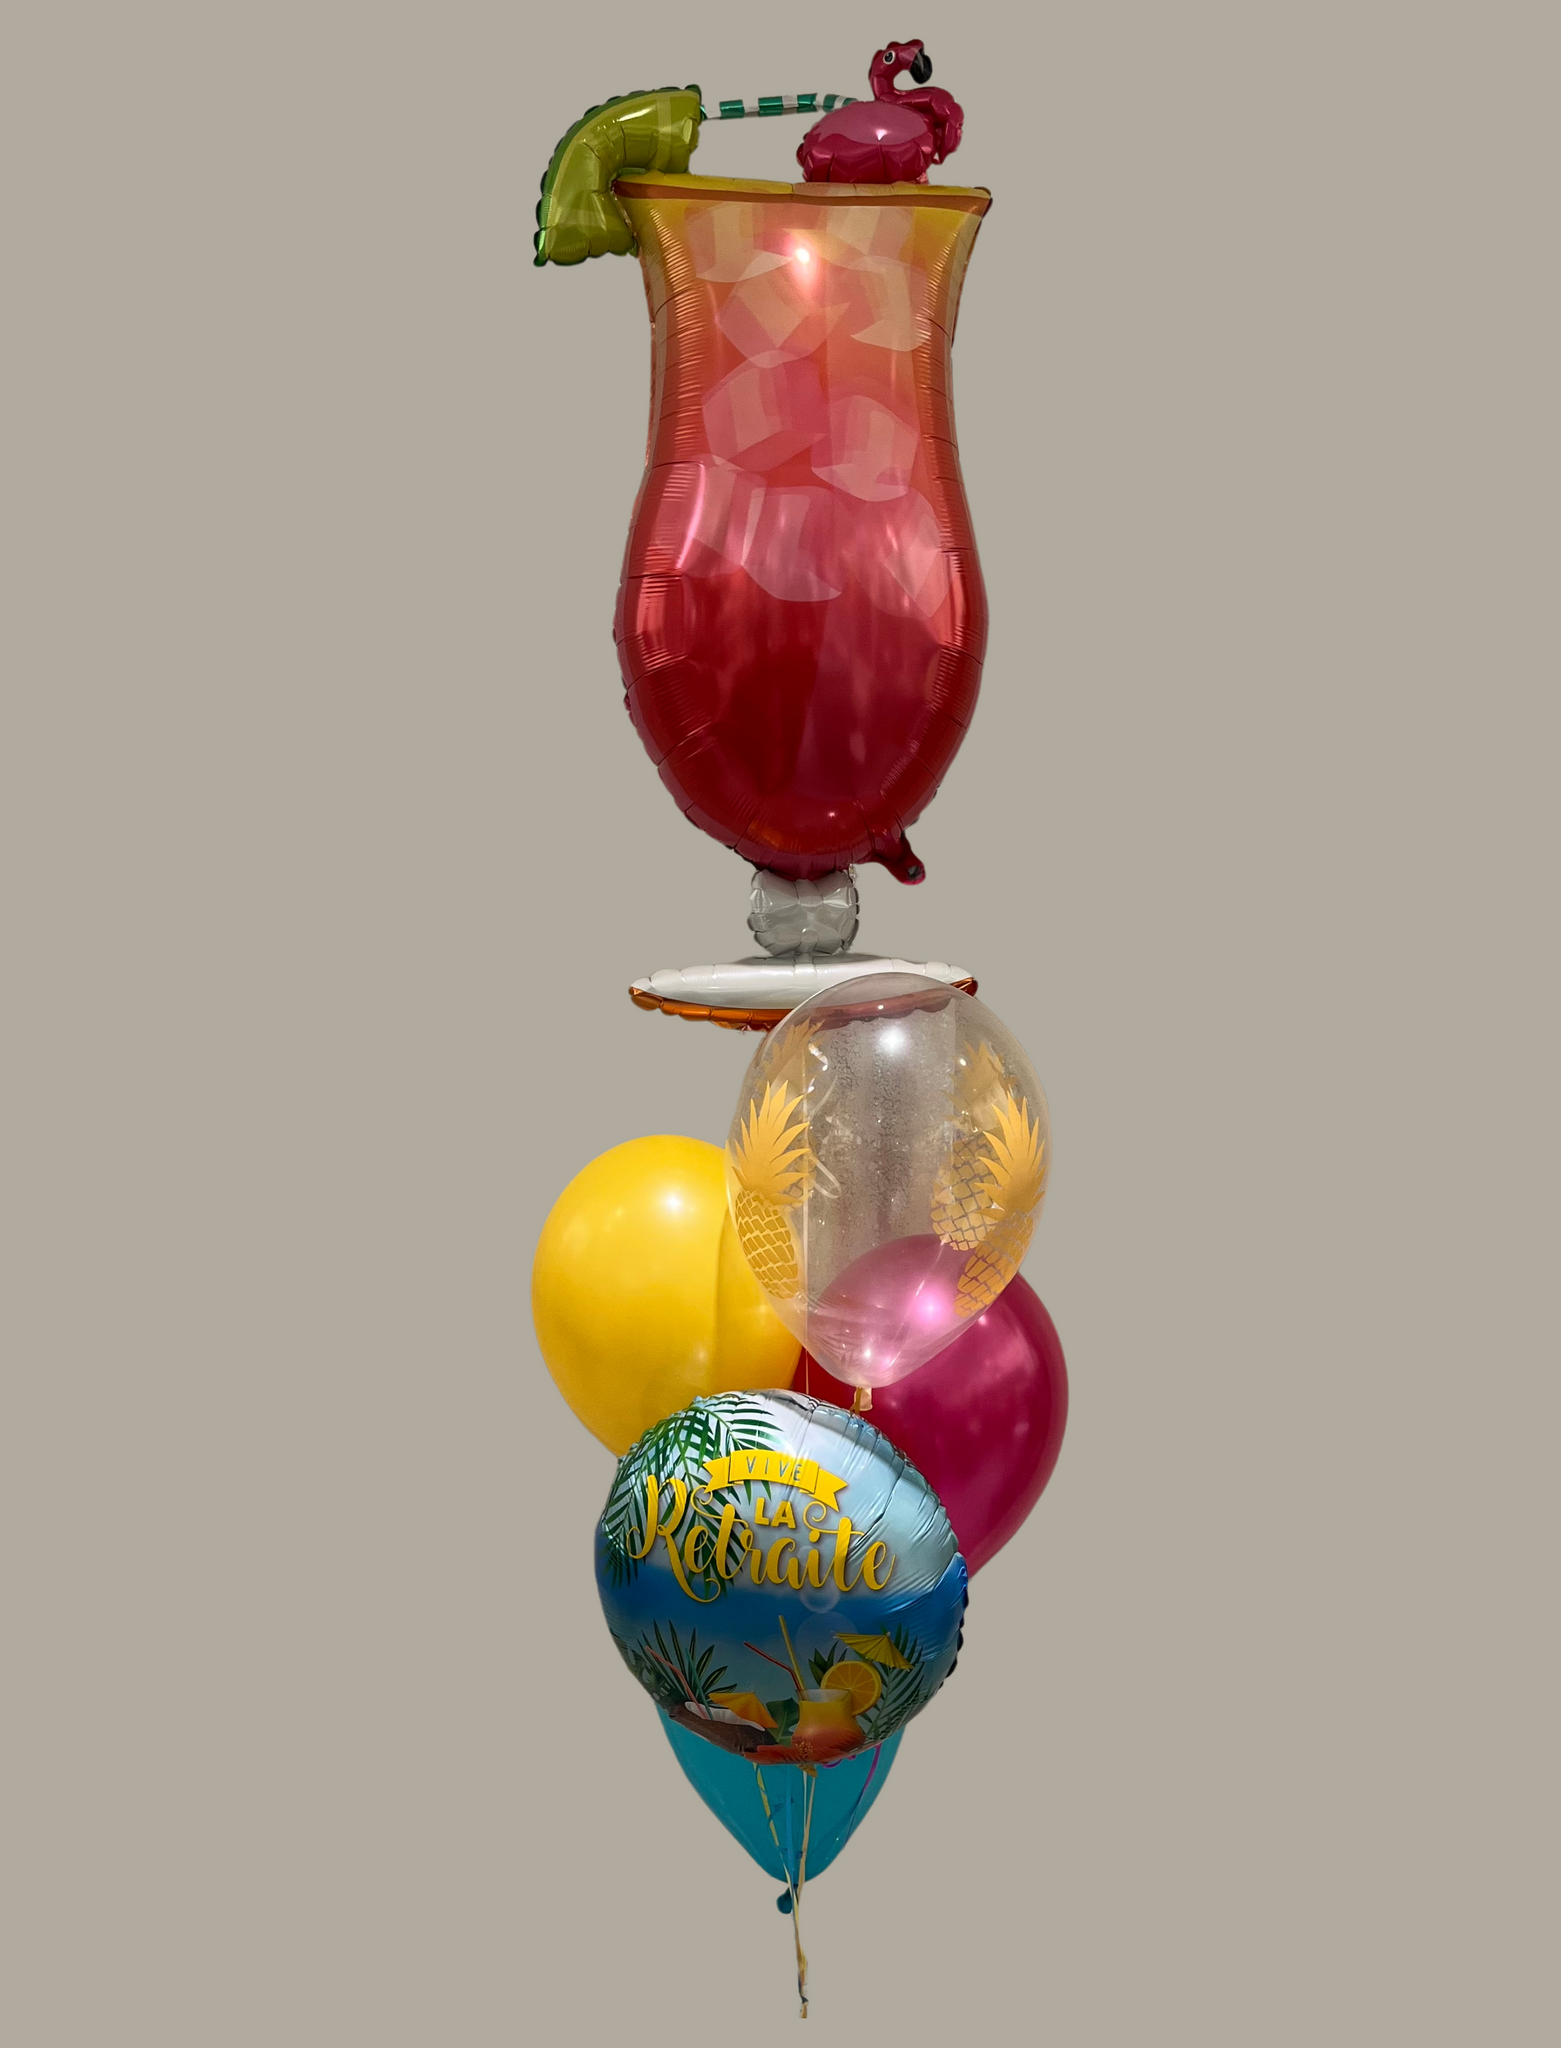 Bouquet de ballons "Vive la retraite tropicale "